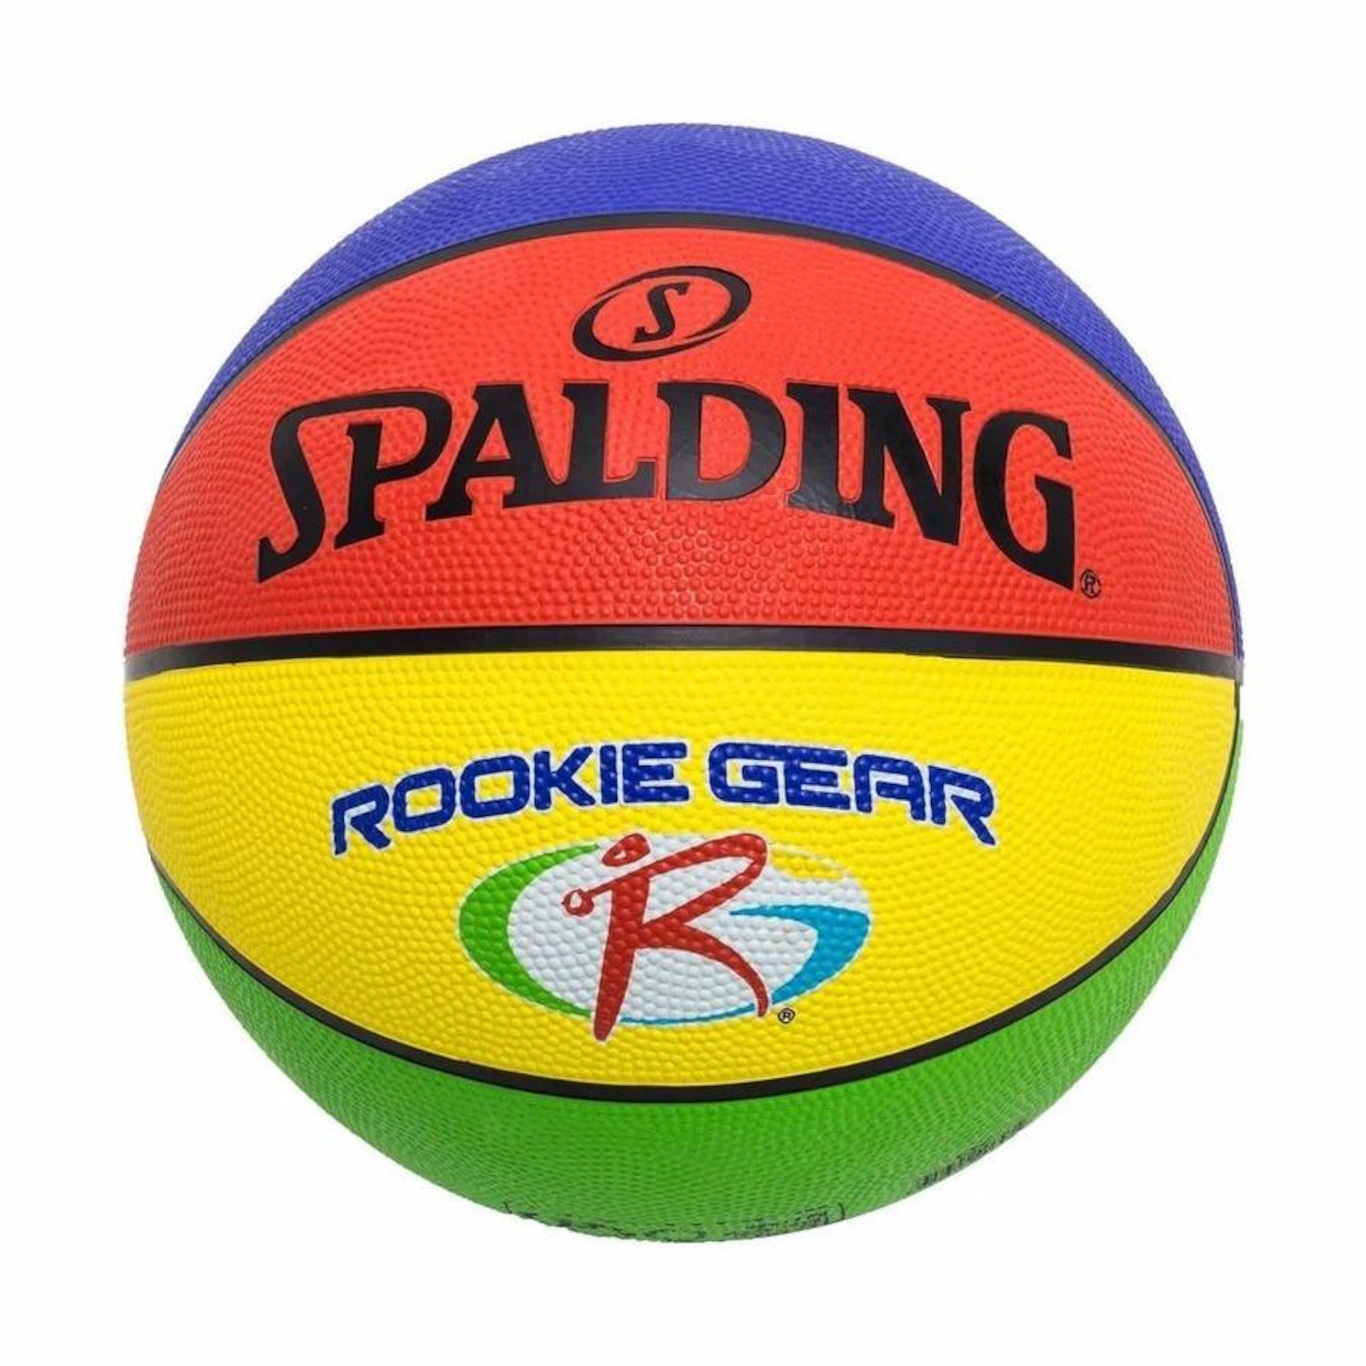 Bola de Basquete Spalding Rookie Gear Colorida - 84395Z